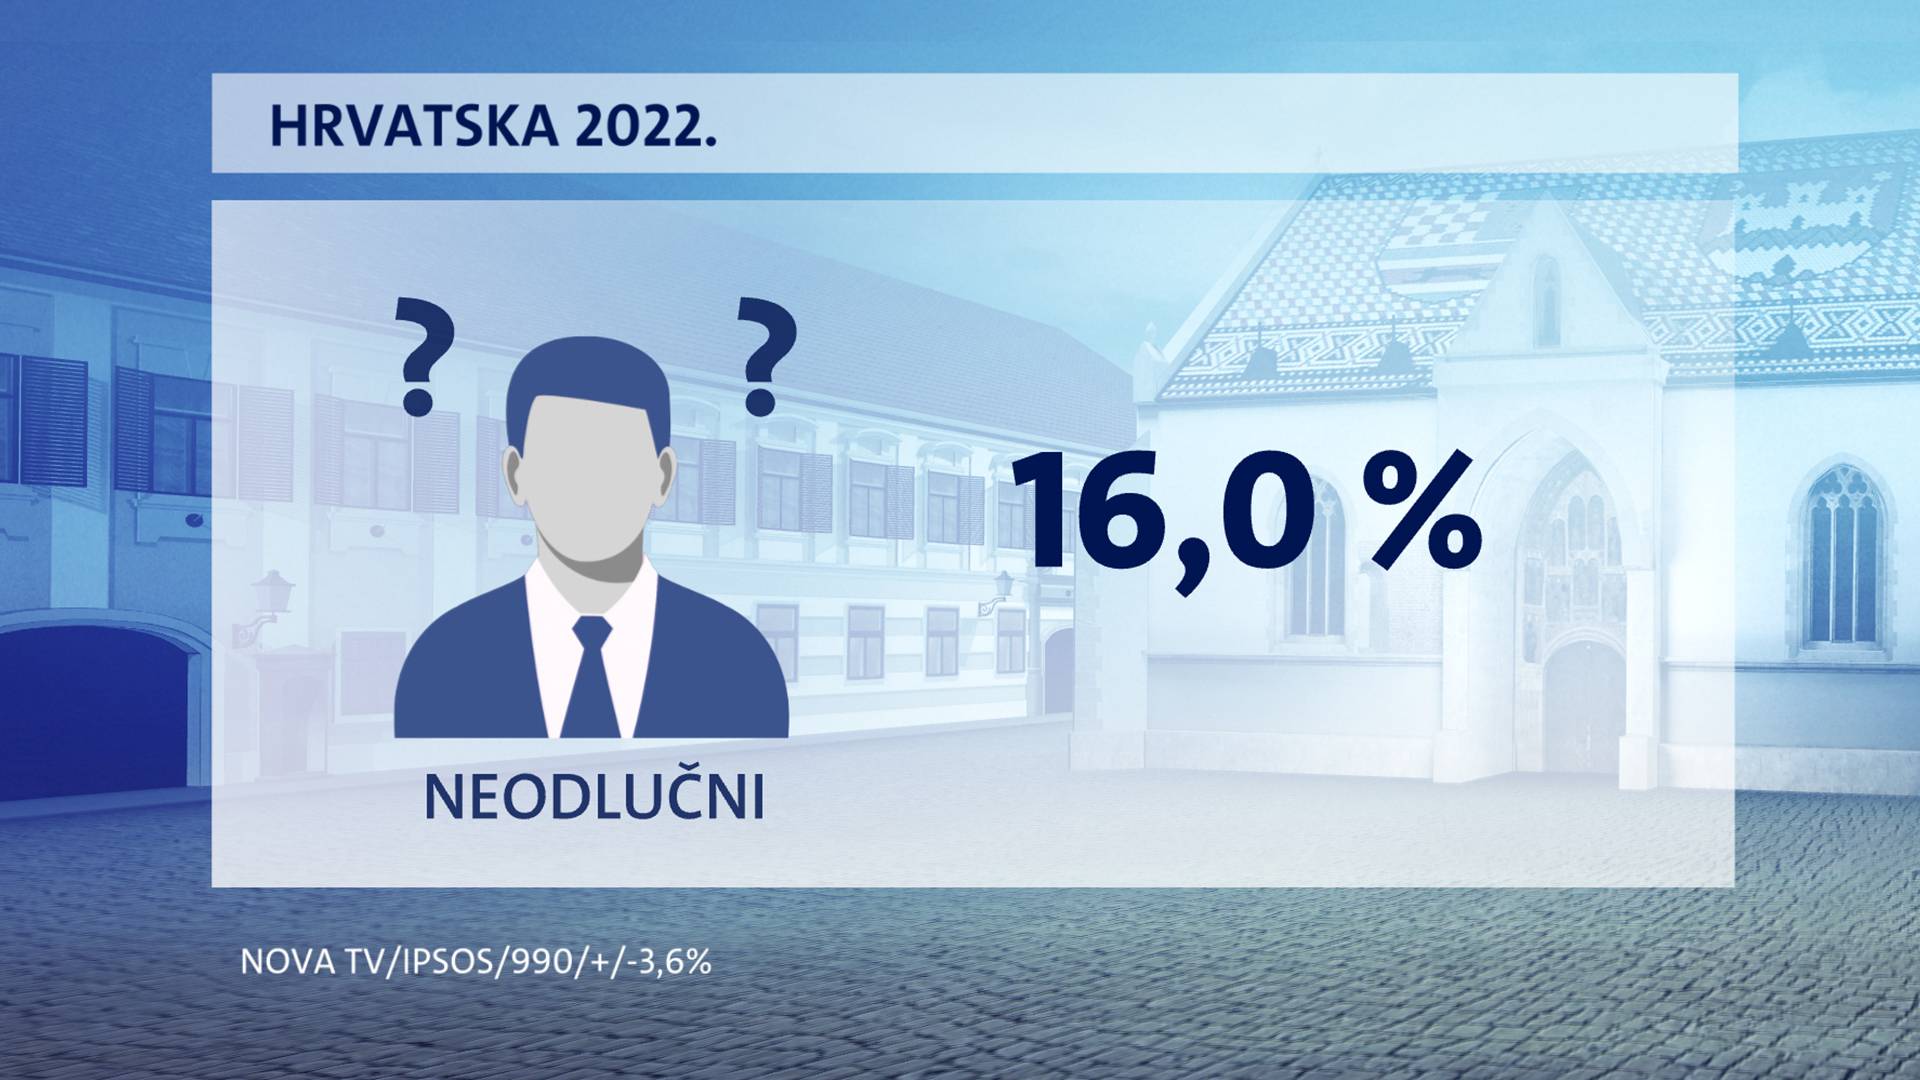 HDZ je i dalje najjača stranka, a Milanović opet najpopularniji